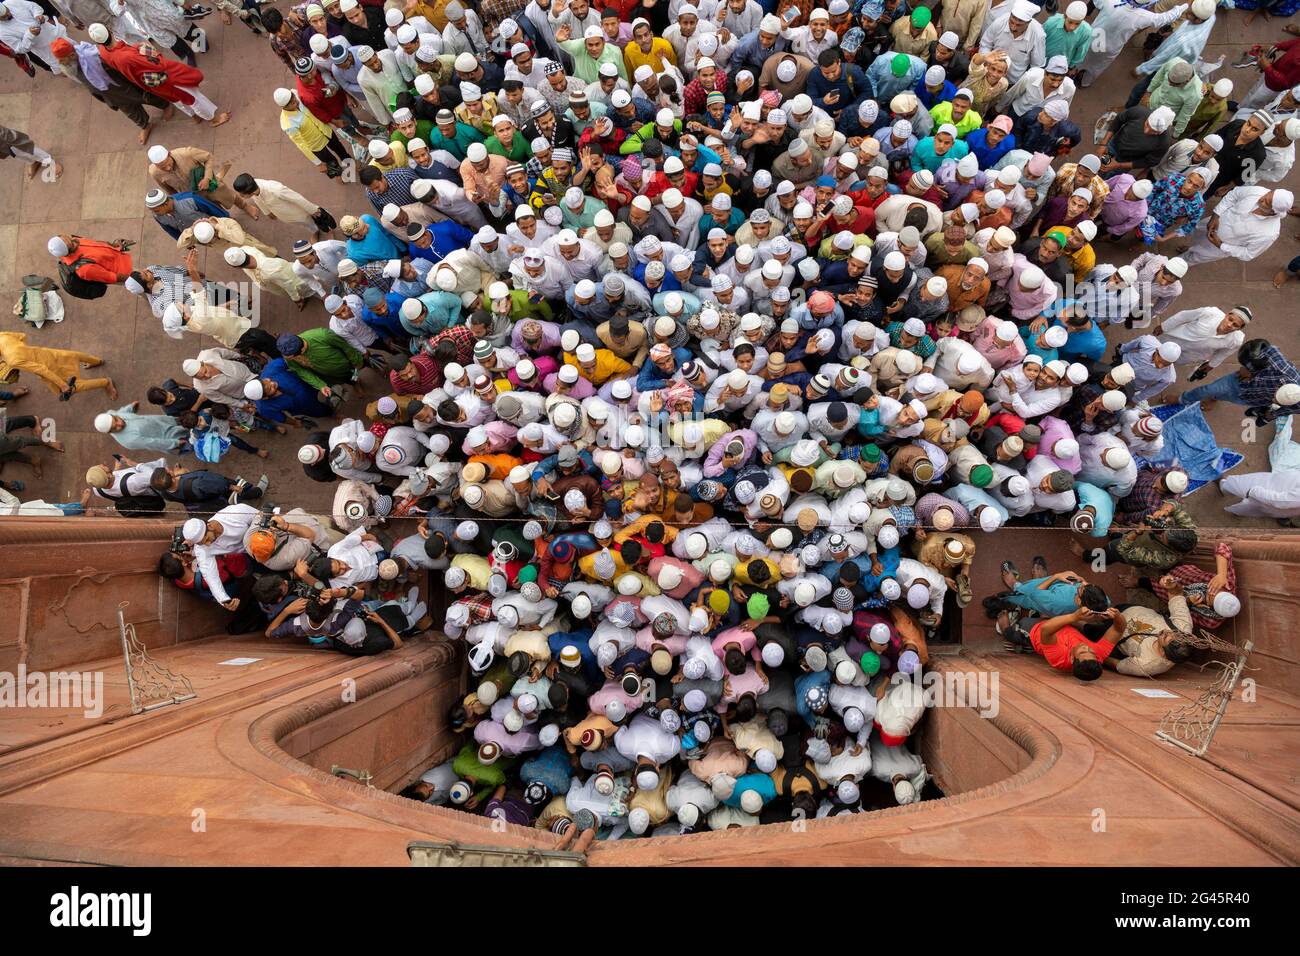 Les hommes musulmans partent après avoir offert Eid-ul-Fitr namaz à la Masjid-i Jehan-Numa orJama Masjid de Delhi. C'est l'une des plus grandes mosquées d'Inde Banque D'Images